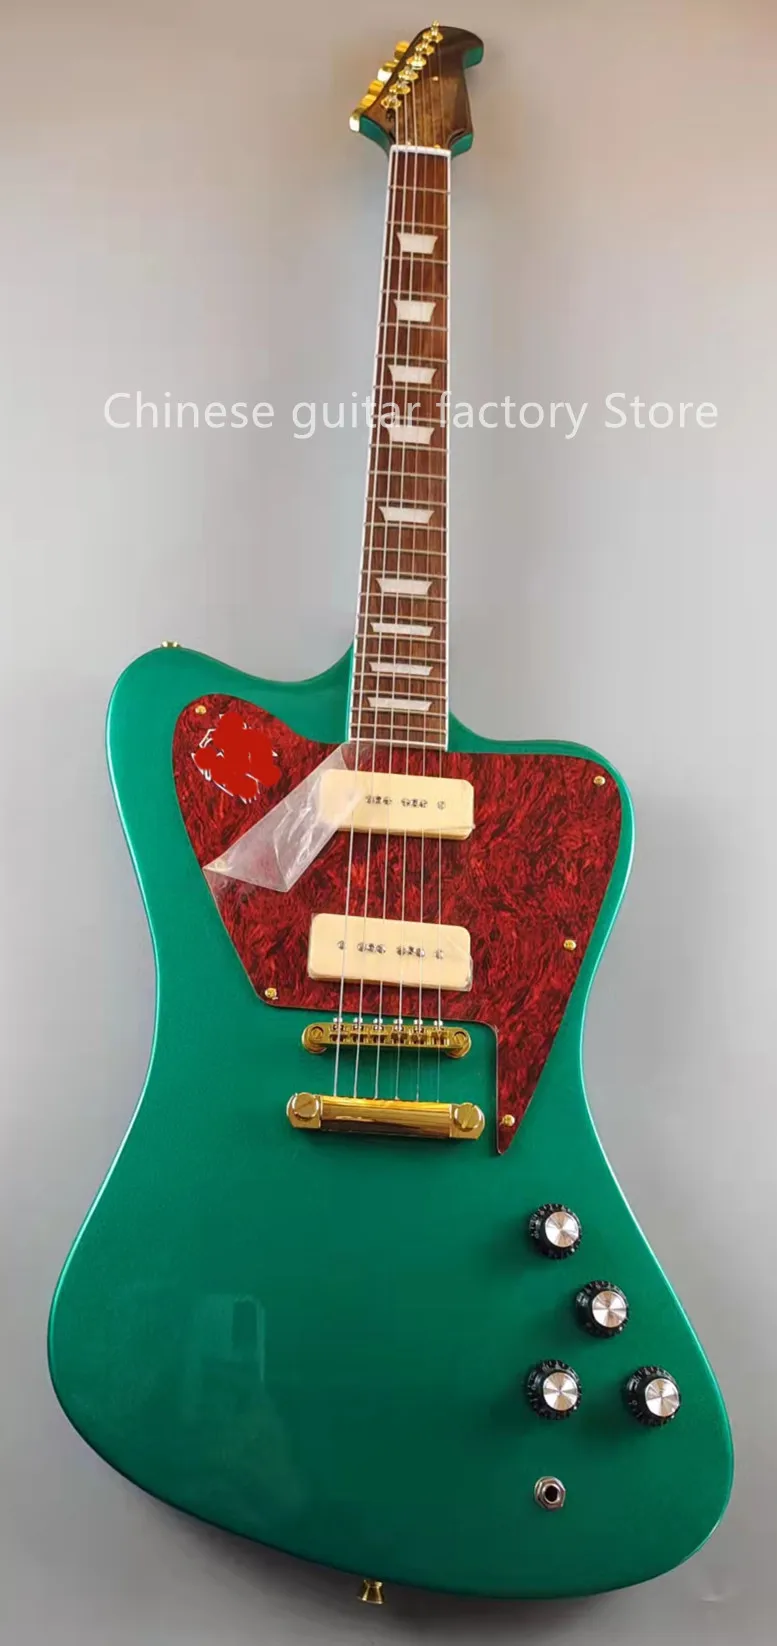 Guitarra Eléctrica Firebird, accesorios dorados, pastillas P90, cuerpo de caoba, se vende en stock, envío gratis, fa